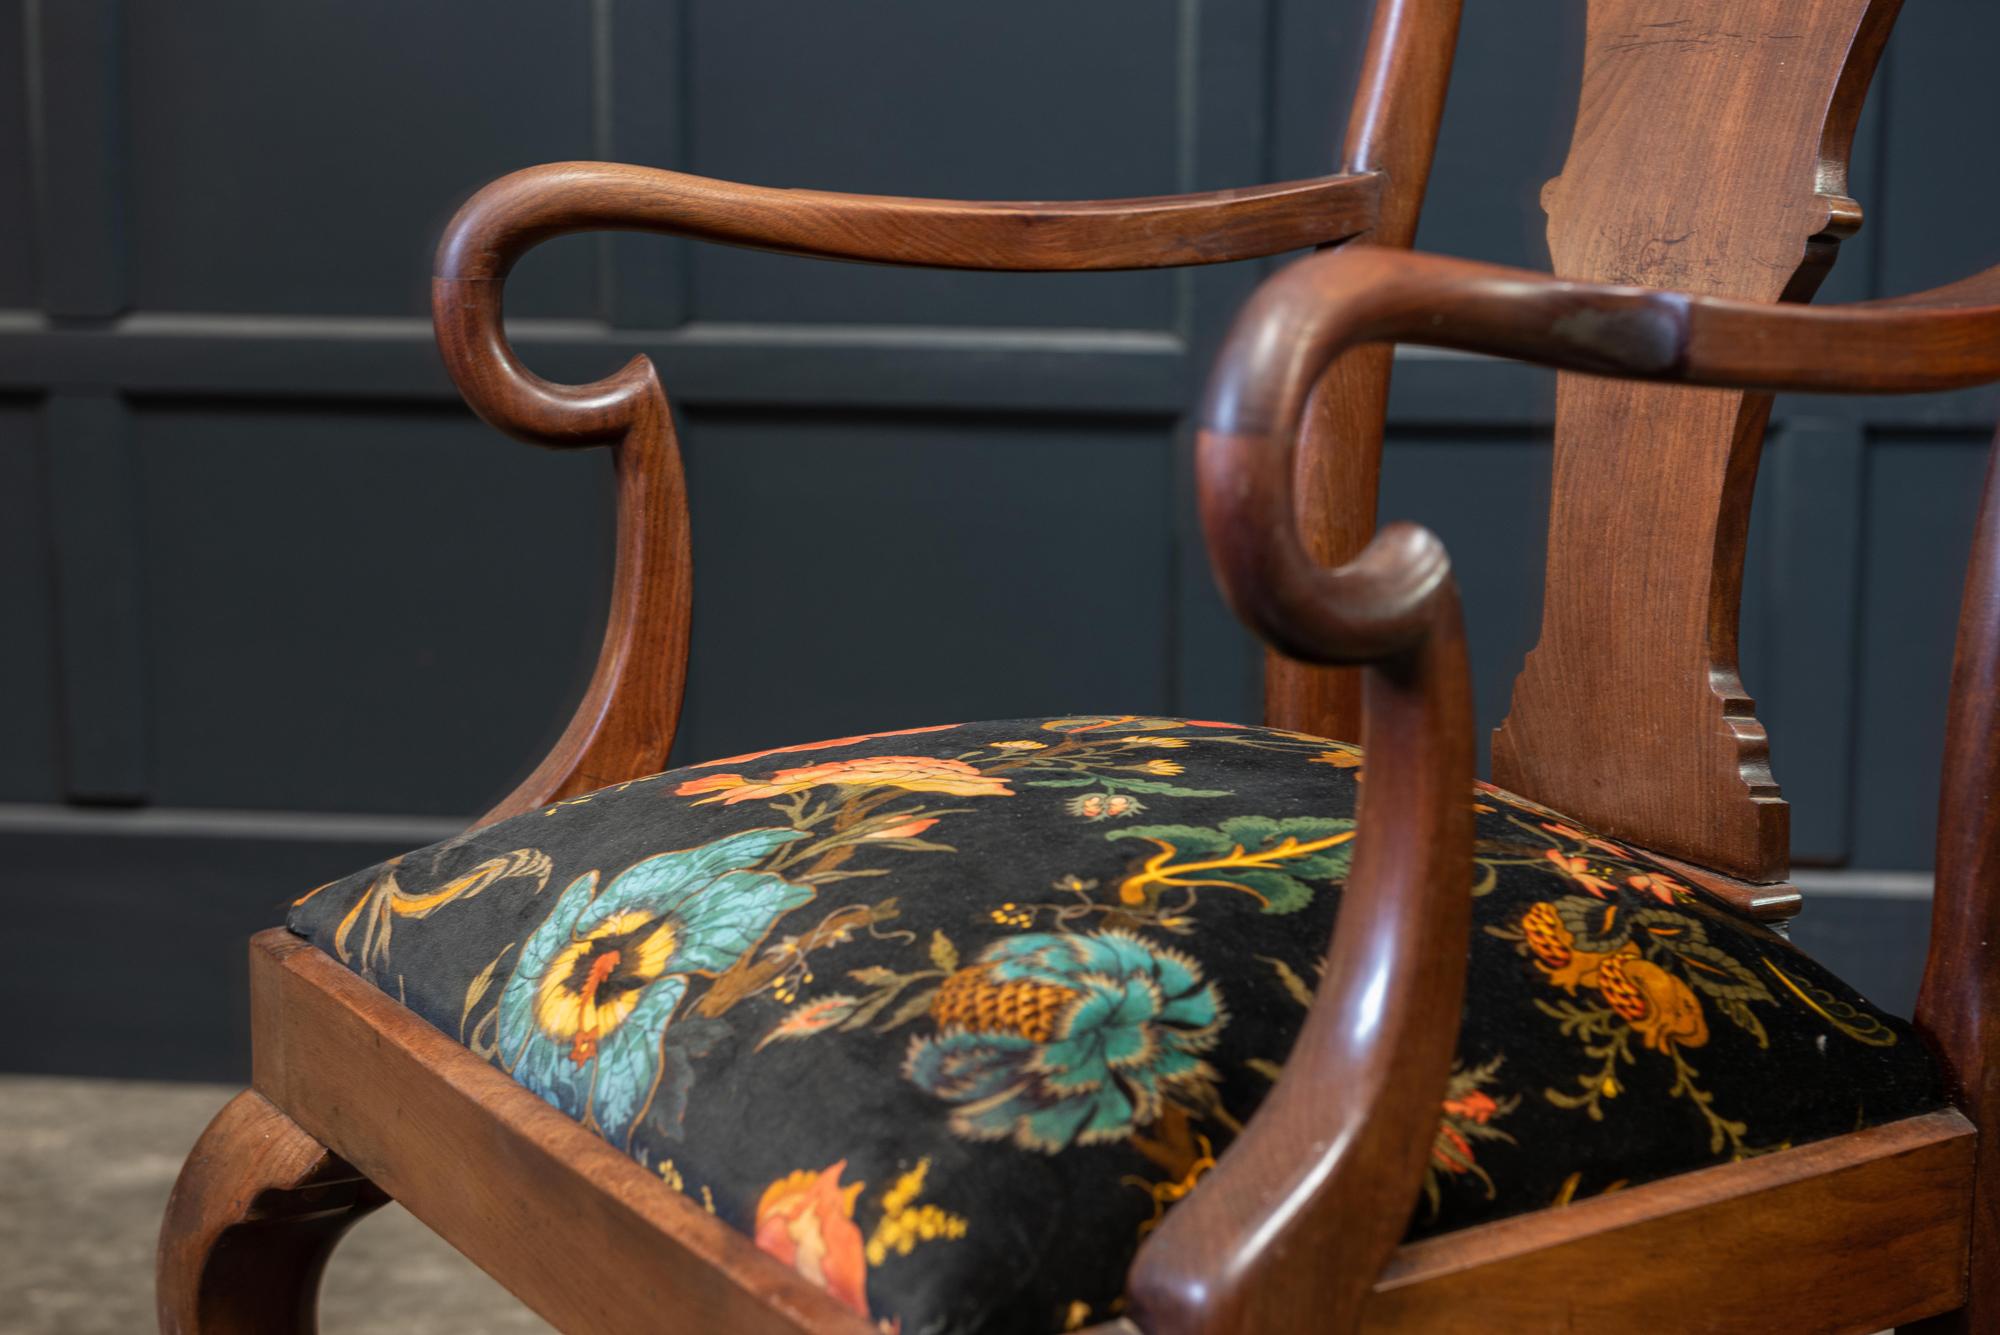 Paire de grands fauteuils coudés en acajou du XIXe siècle, rembourrés de velours 'Artemis'.
Taille et forme excellentes

vers 1880.

Mesures : L 60 x P 59 x H 108cm
Hauteur du siège 50cm.